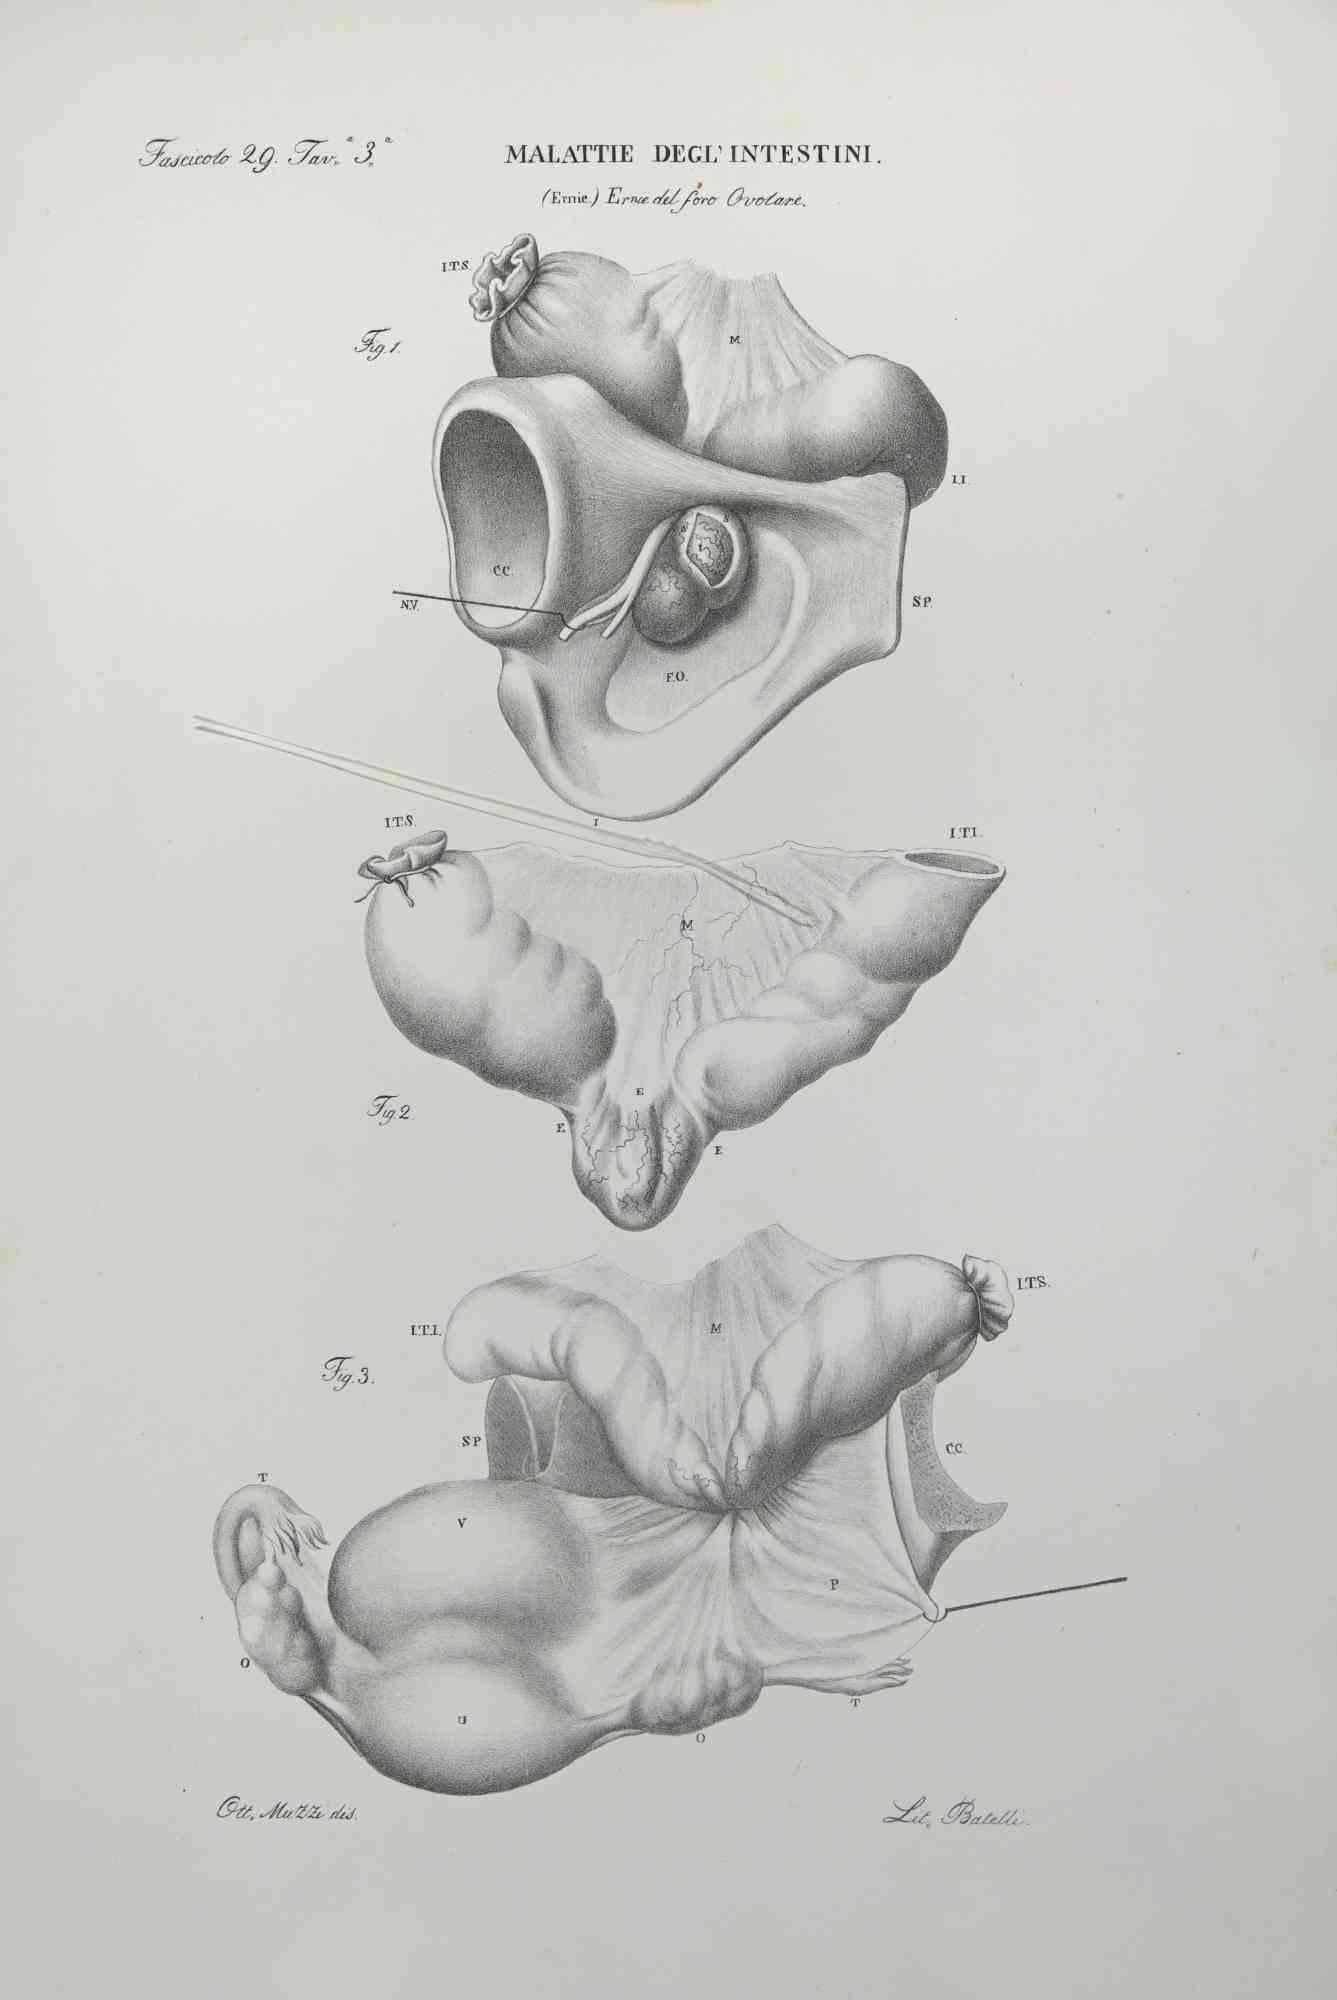 Darmerkrankungen ist eine Lithographie von Ottavio Muzzi für die Ausgabe von Antoine Chazal, Human Anatomy, Druckerei Batelli und Ridolfi, 1843.

Das Werk gehört zum Atlante generale della anatomia patologica del corpo umano von Jean CRUVEILHIER,